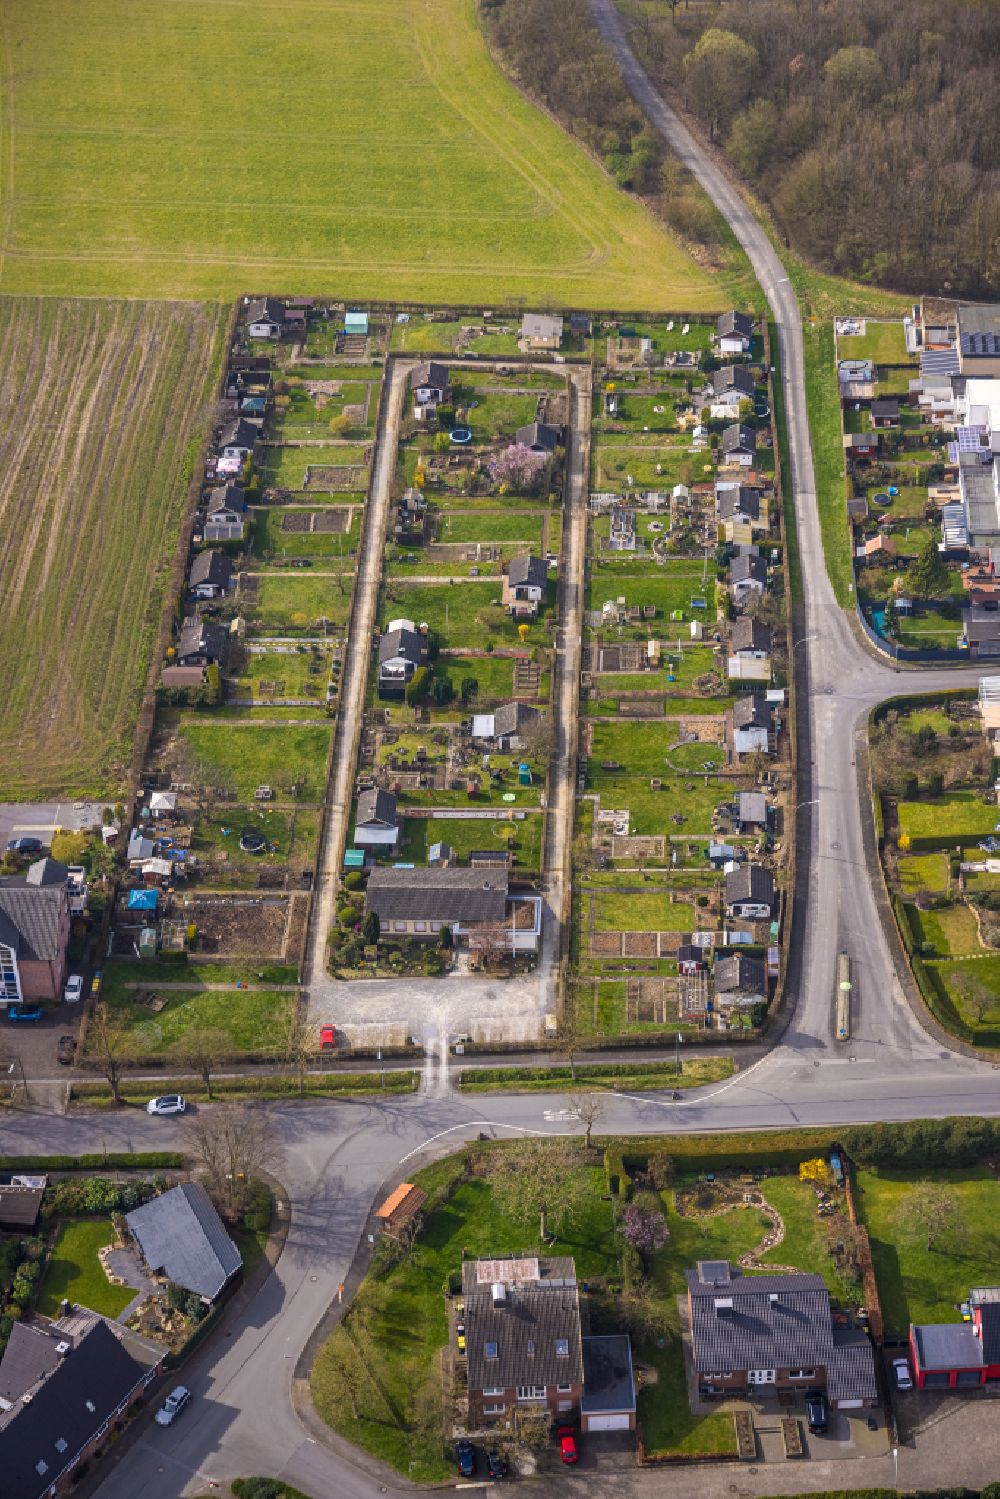 Luftbild Ahlen - Kleingartenanlagen einer Laubenkolonie in Ahlen im Bundesland Nordrhein-Westfalen, Deutschland